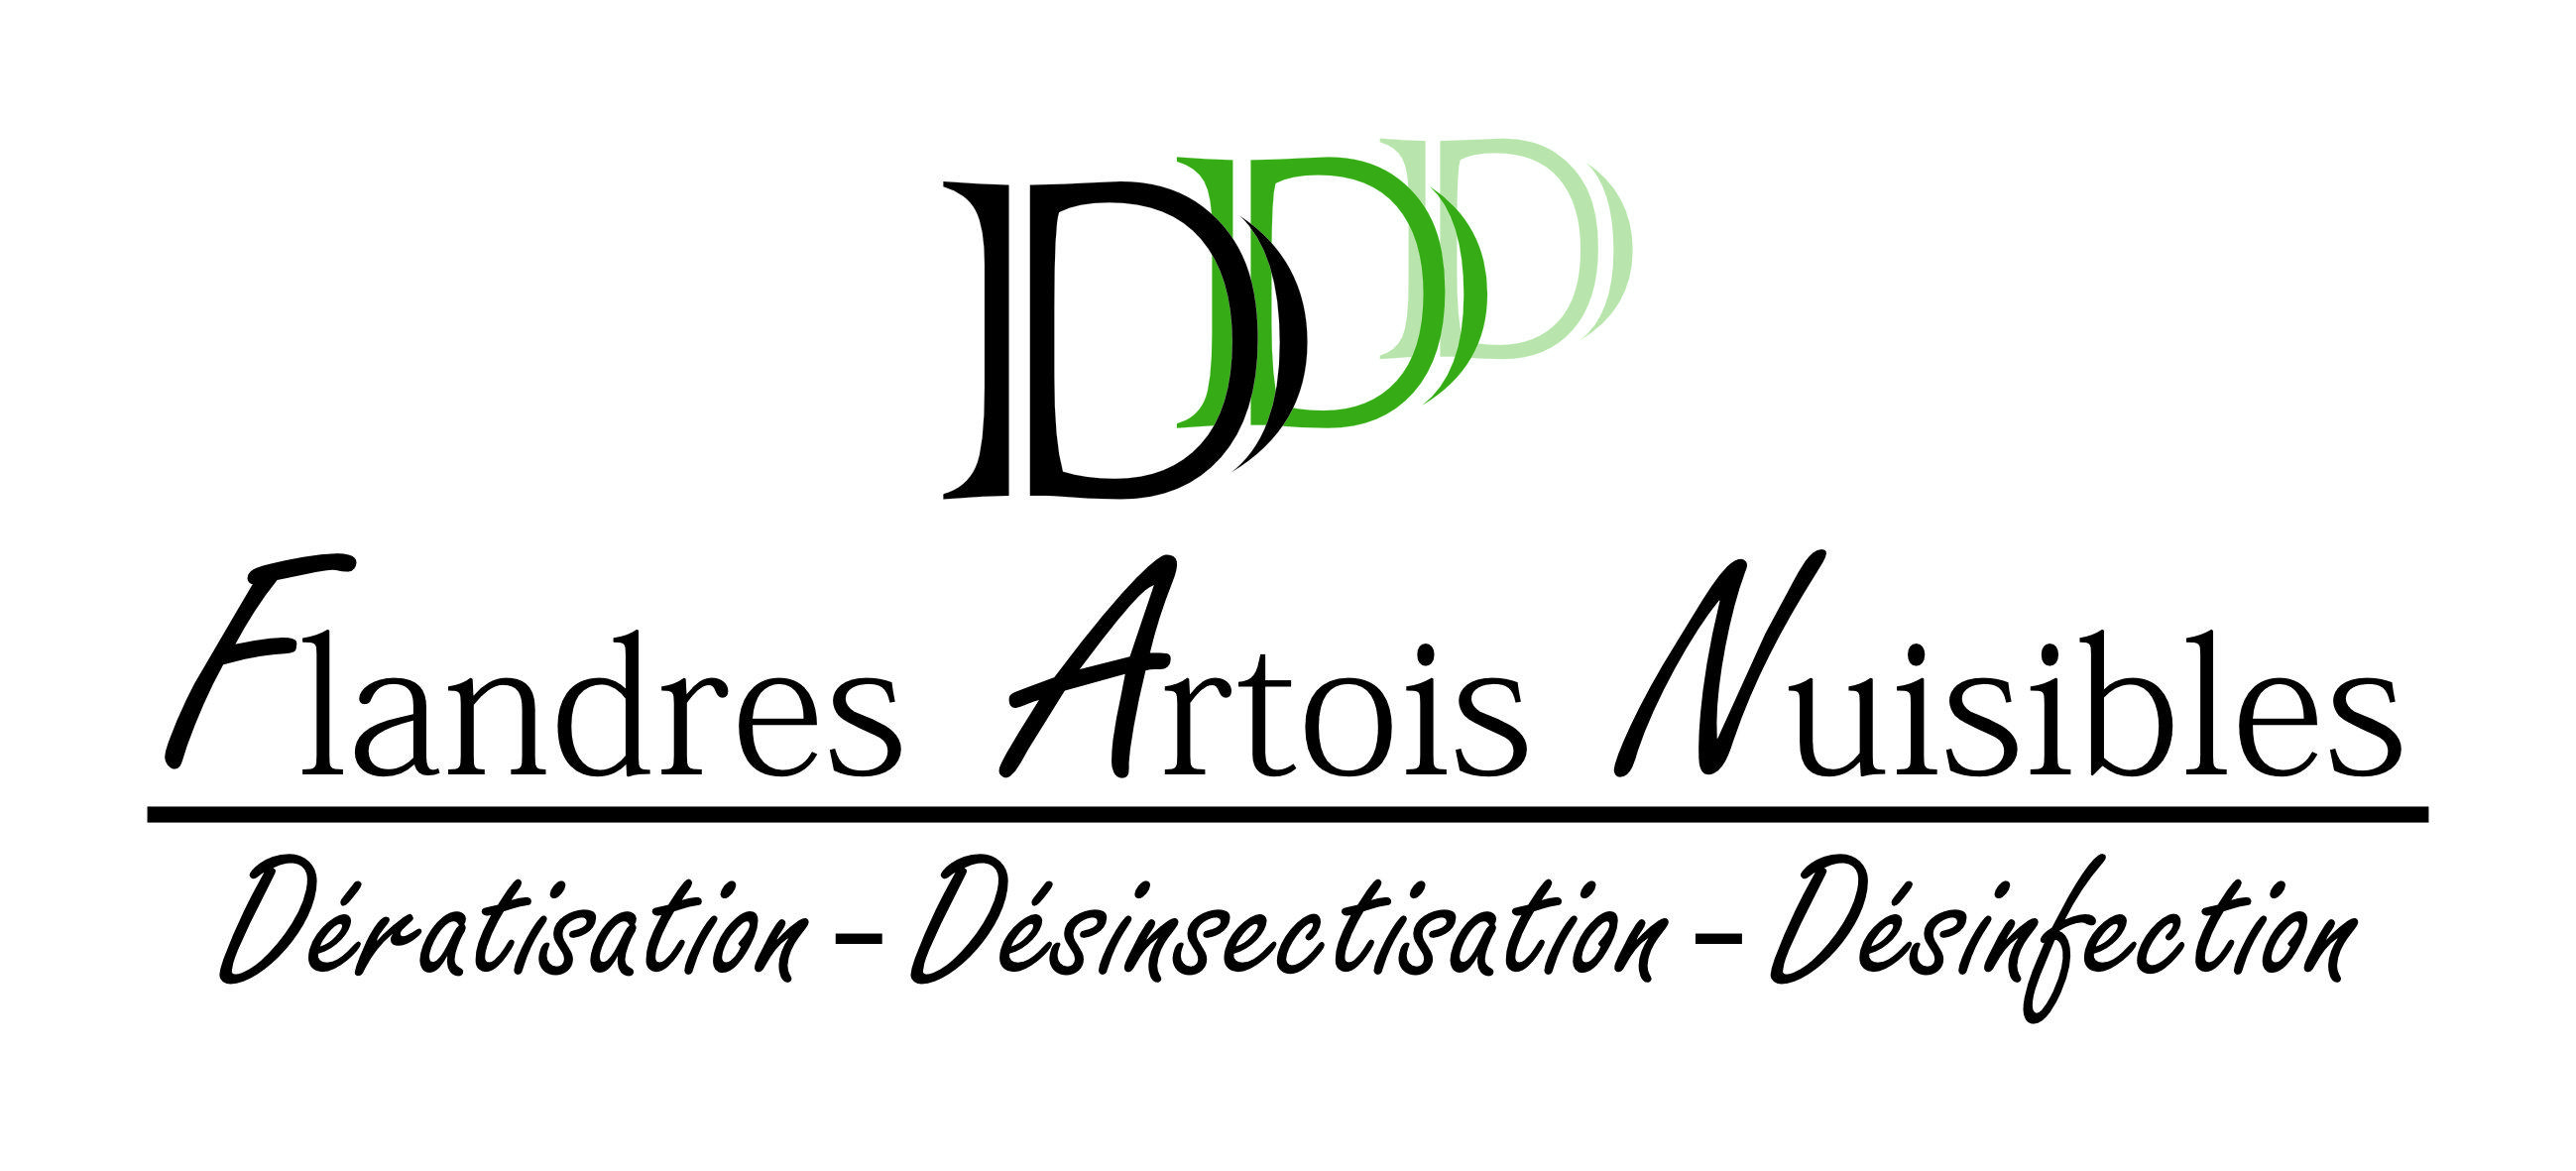 FLANDRES ARTOIS NUISIBLES Logo